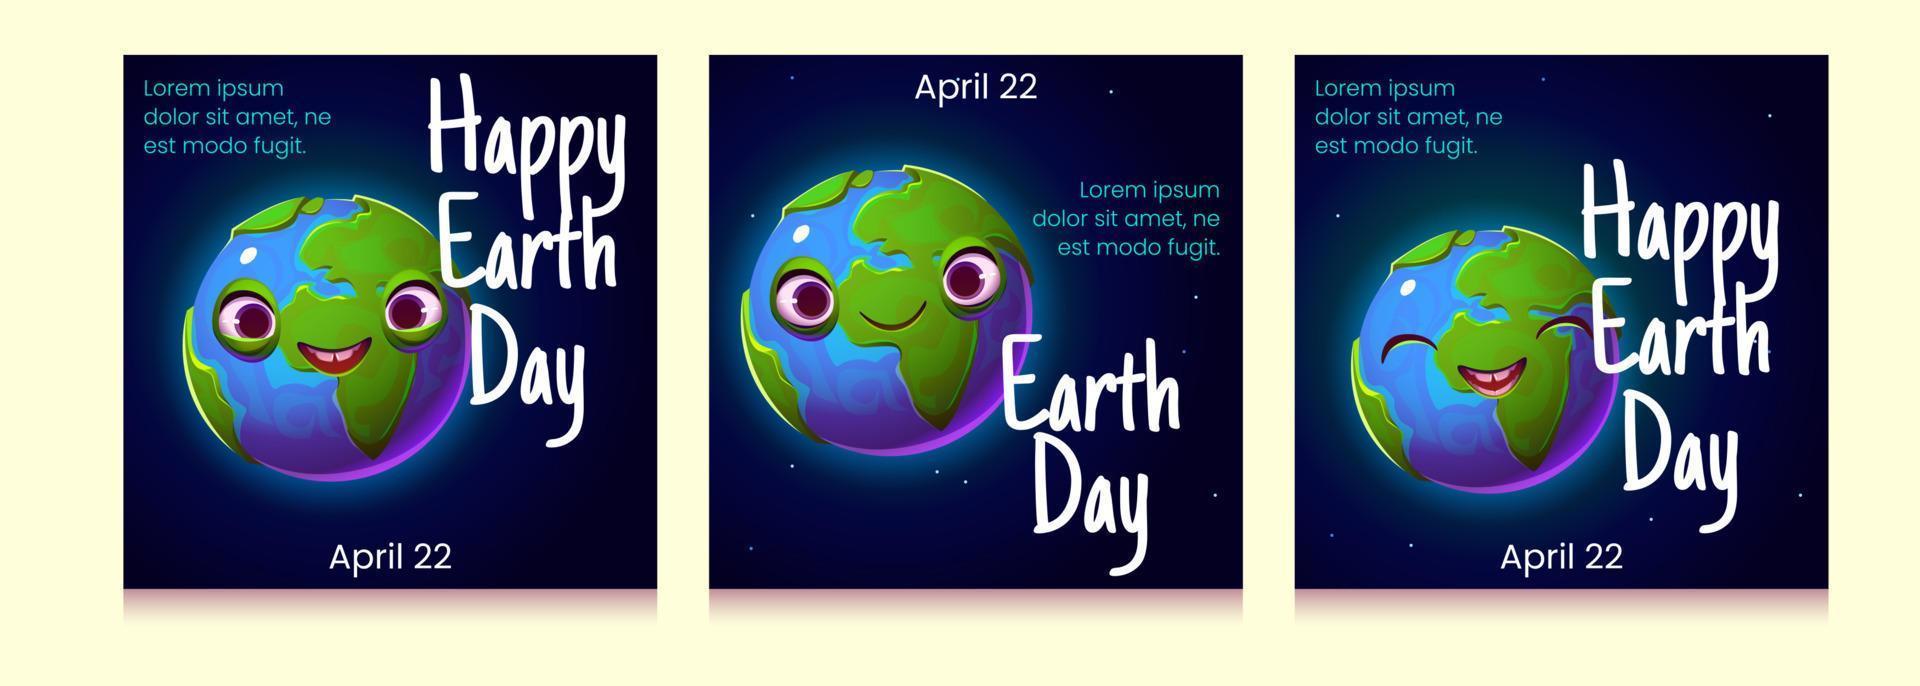 cartazes felizes do dia da terra, planeta bonito dos desenhos animados vetor